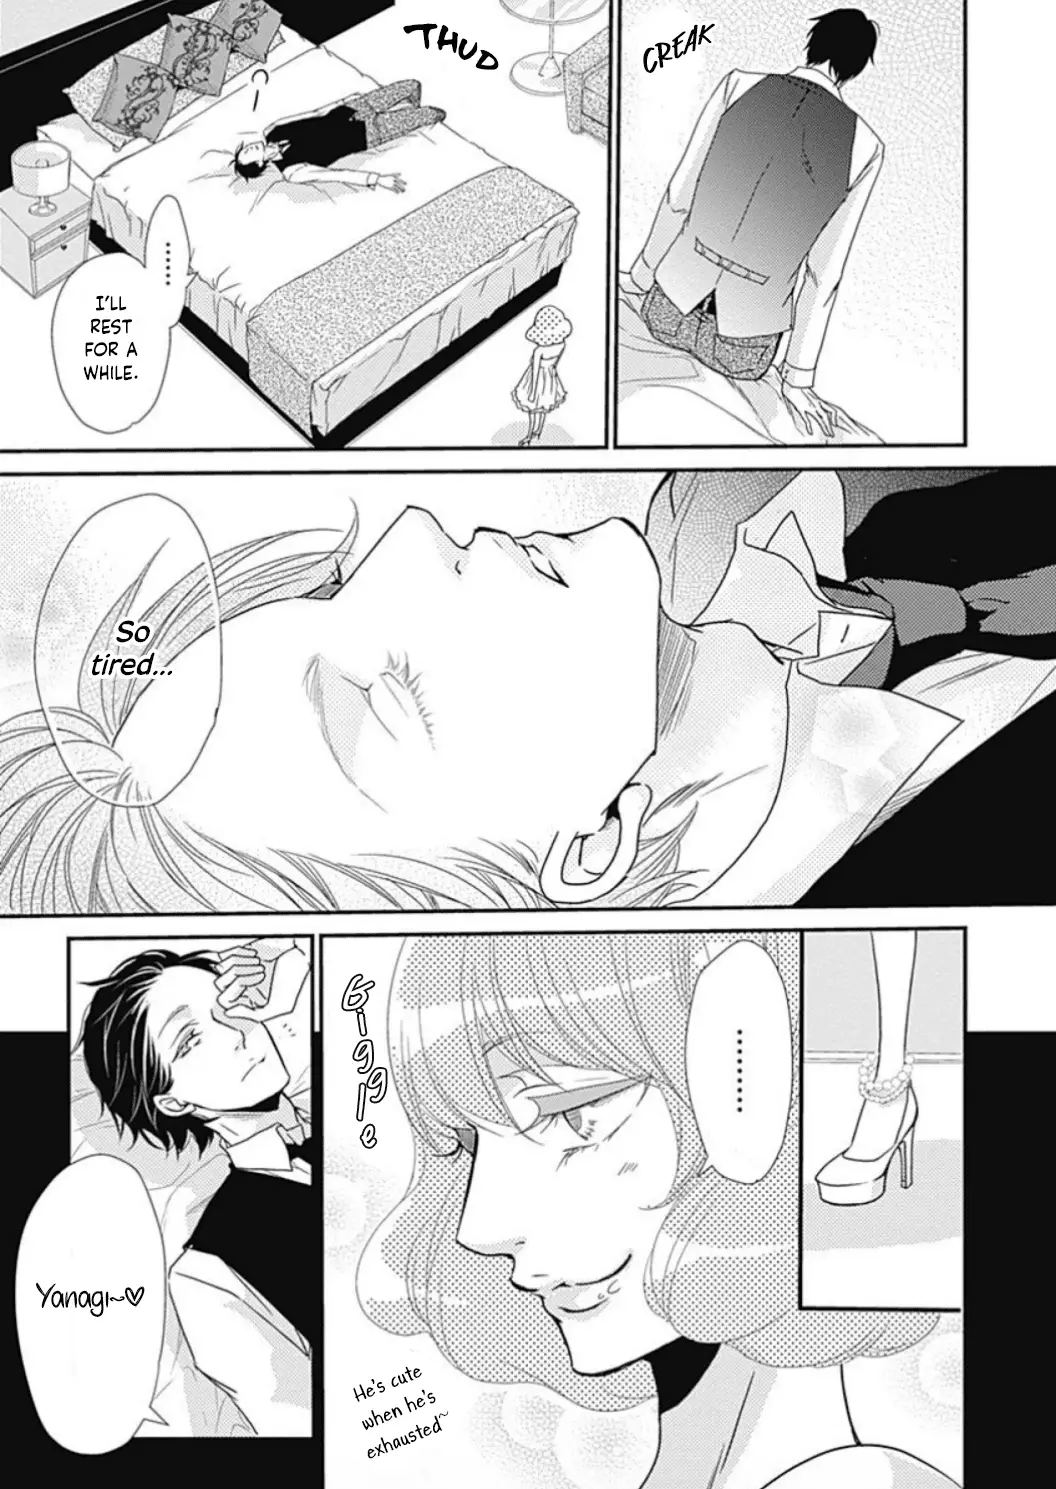 Tappuri No Kiss Kara Hajimete - 18 page 13-4539cf28